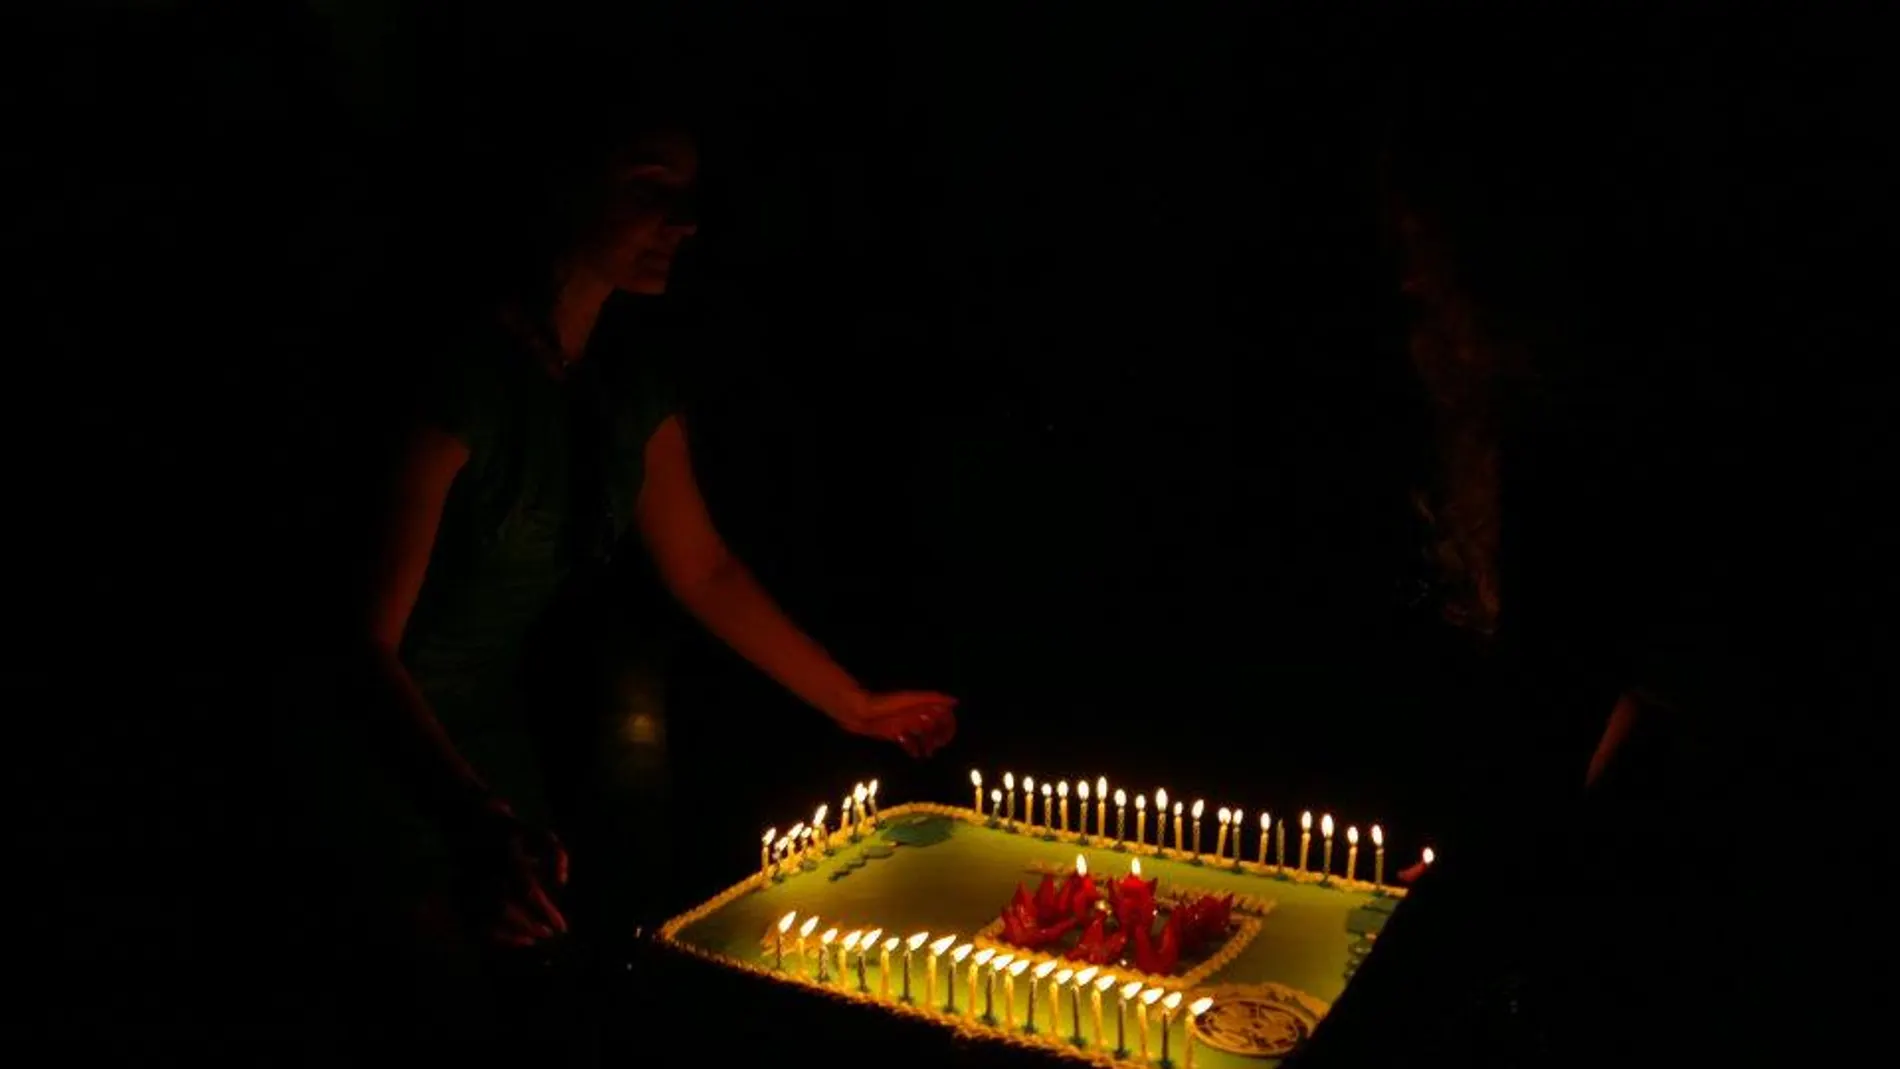 Malala apagando las velas de la tarta el día 10 de diciembre cuando recibió en Oslo el Premio Nobel de la Paz.